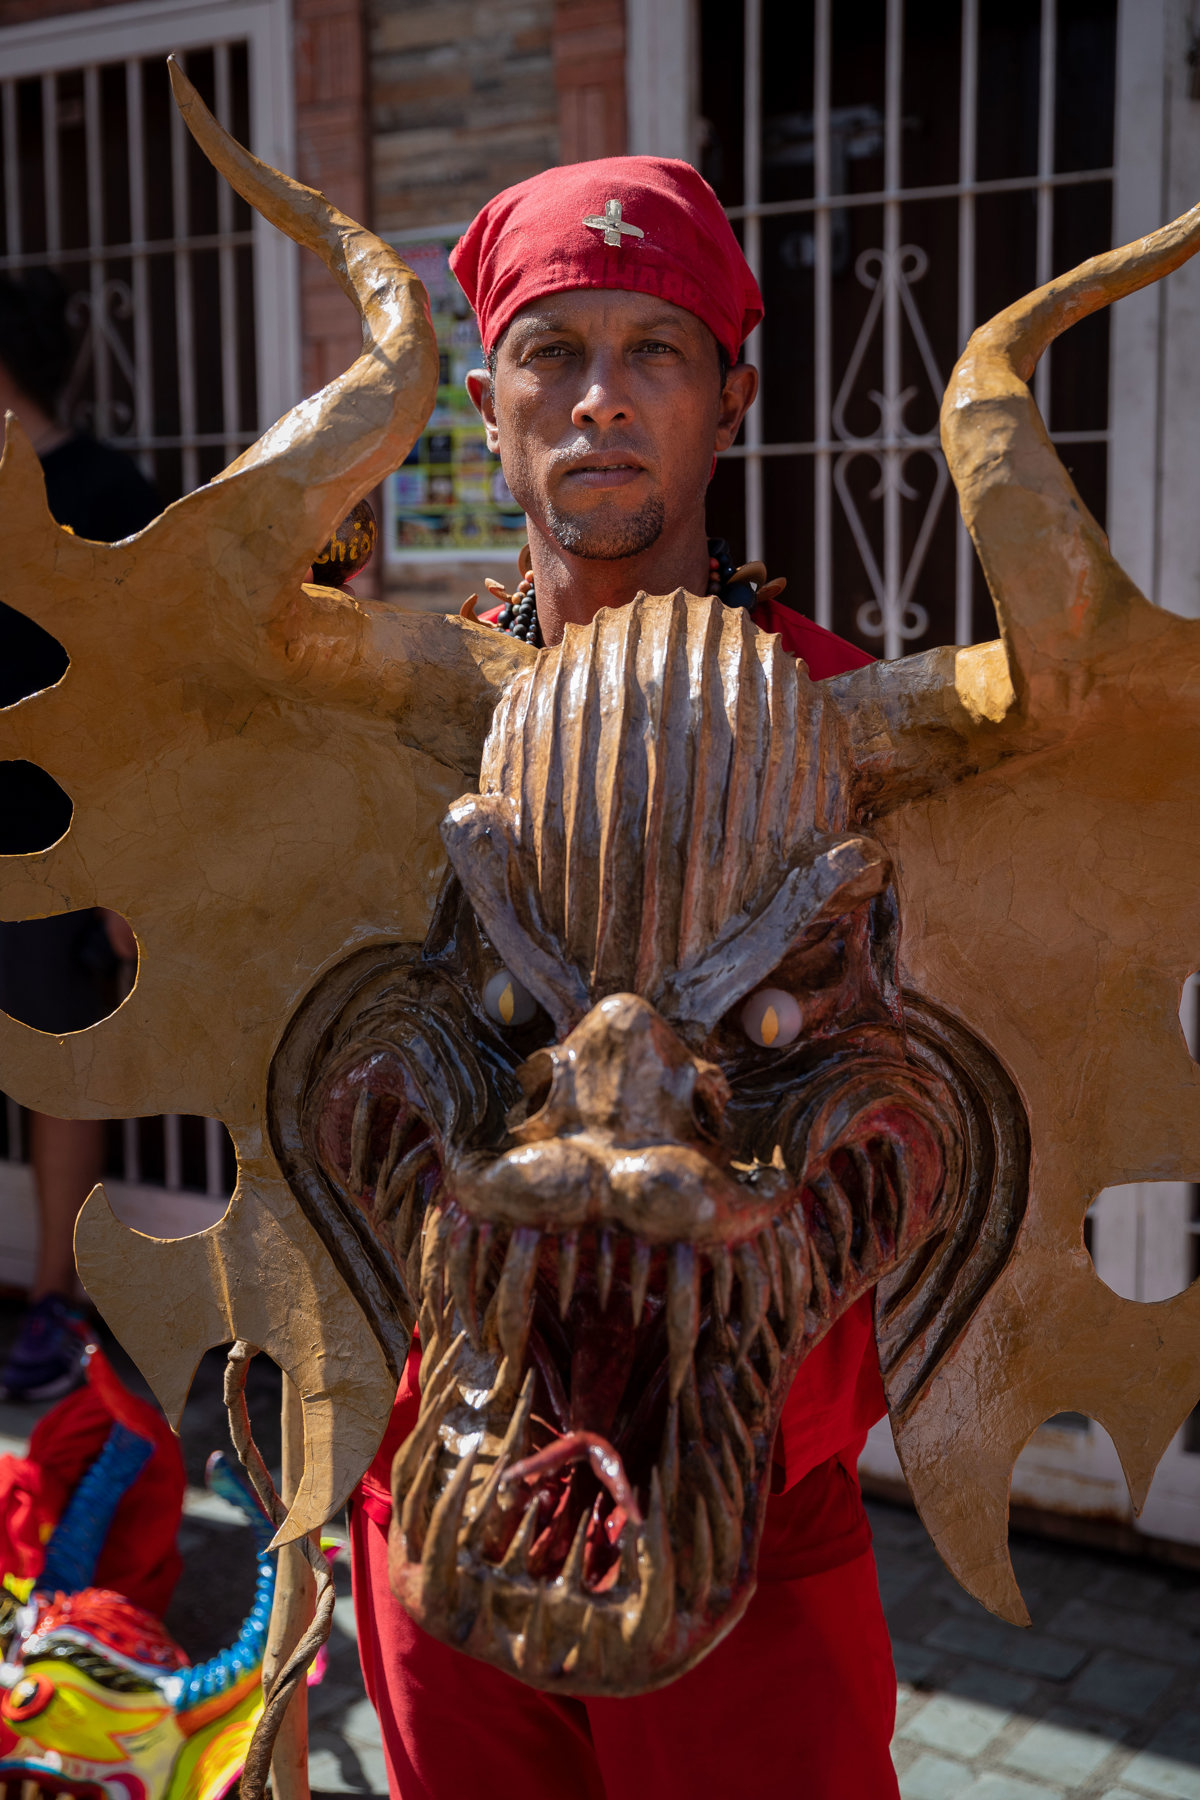 Cientos de diablos danzantes celebran el Corpus Christi con una procesión en Venezuela